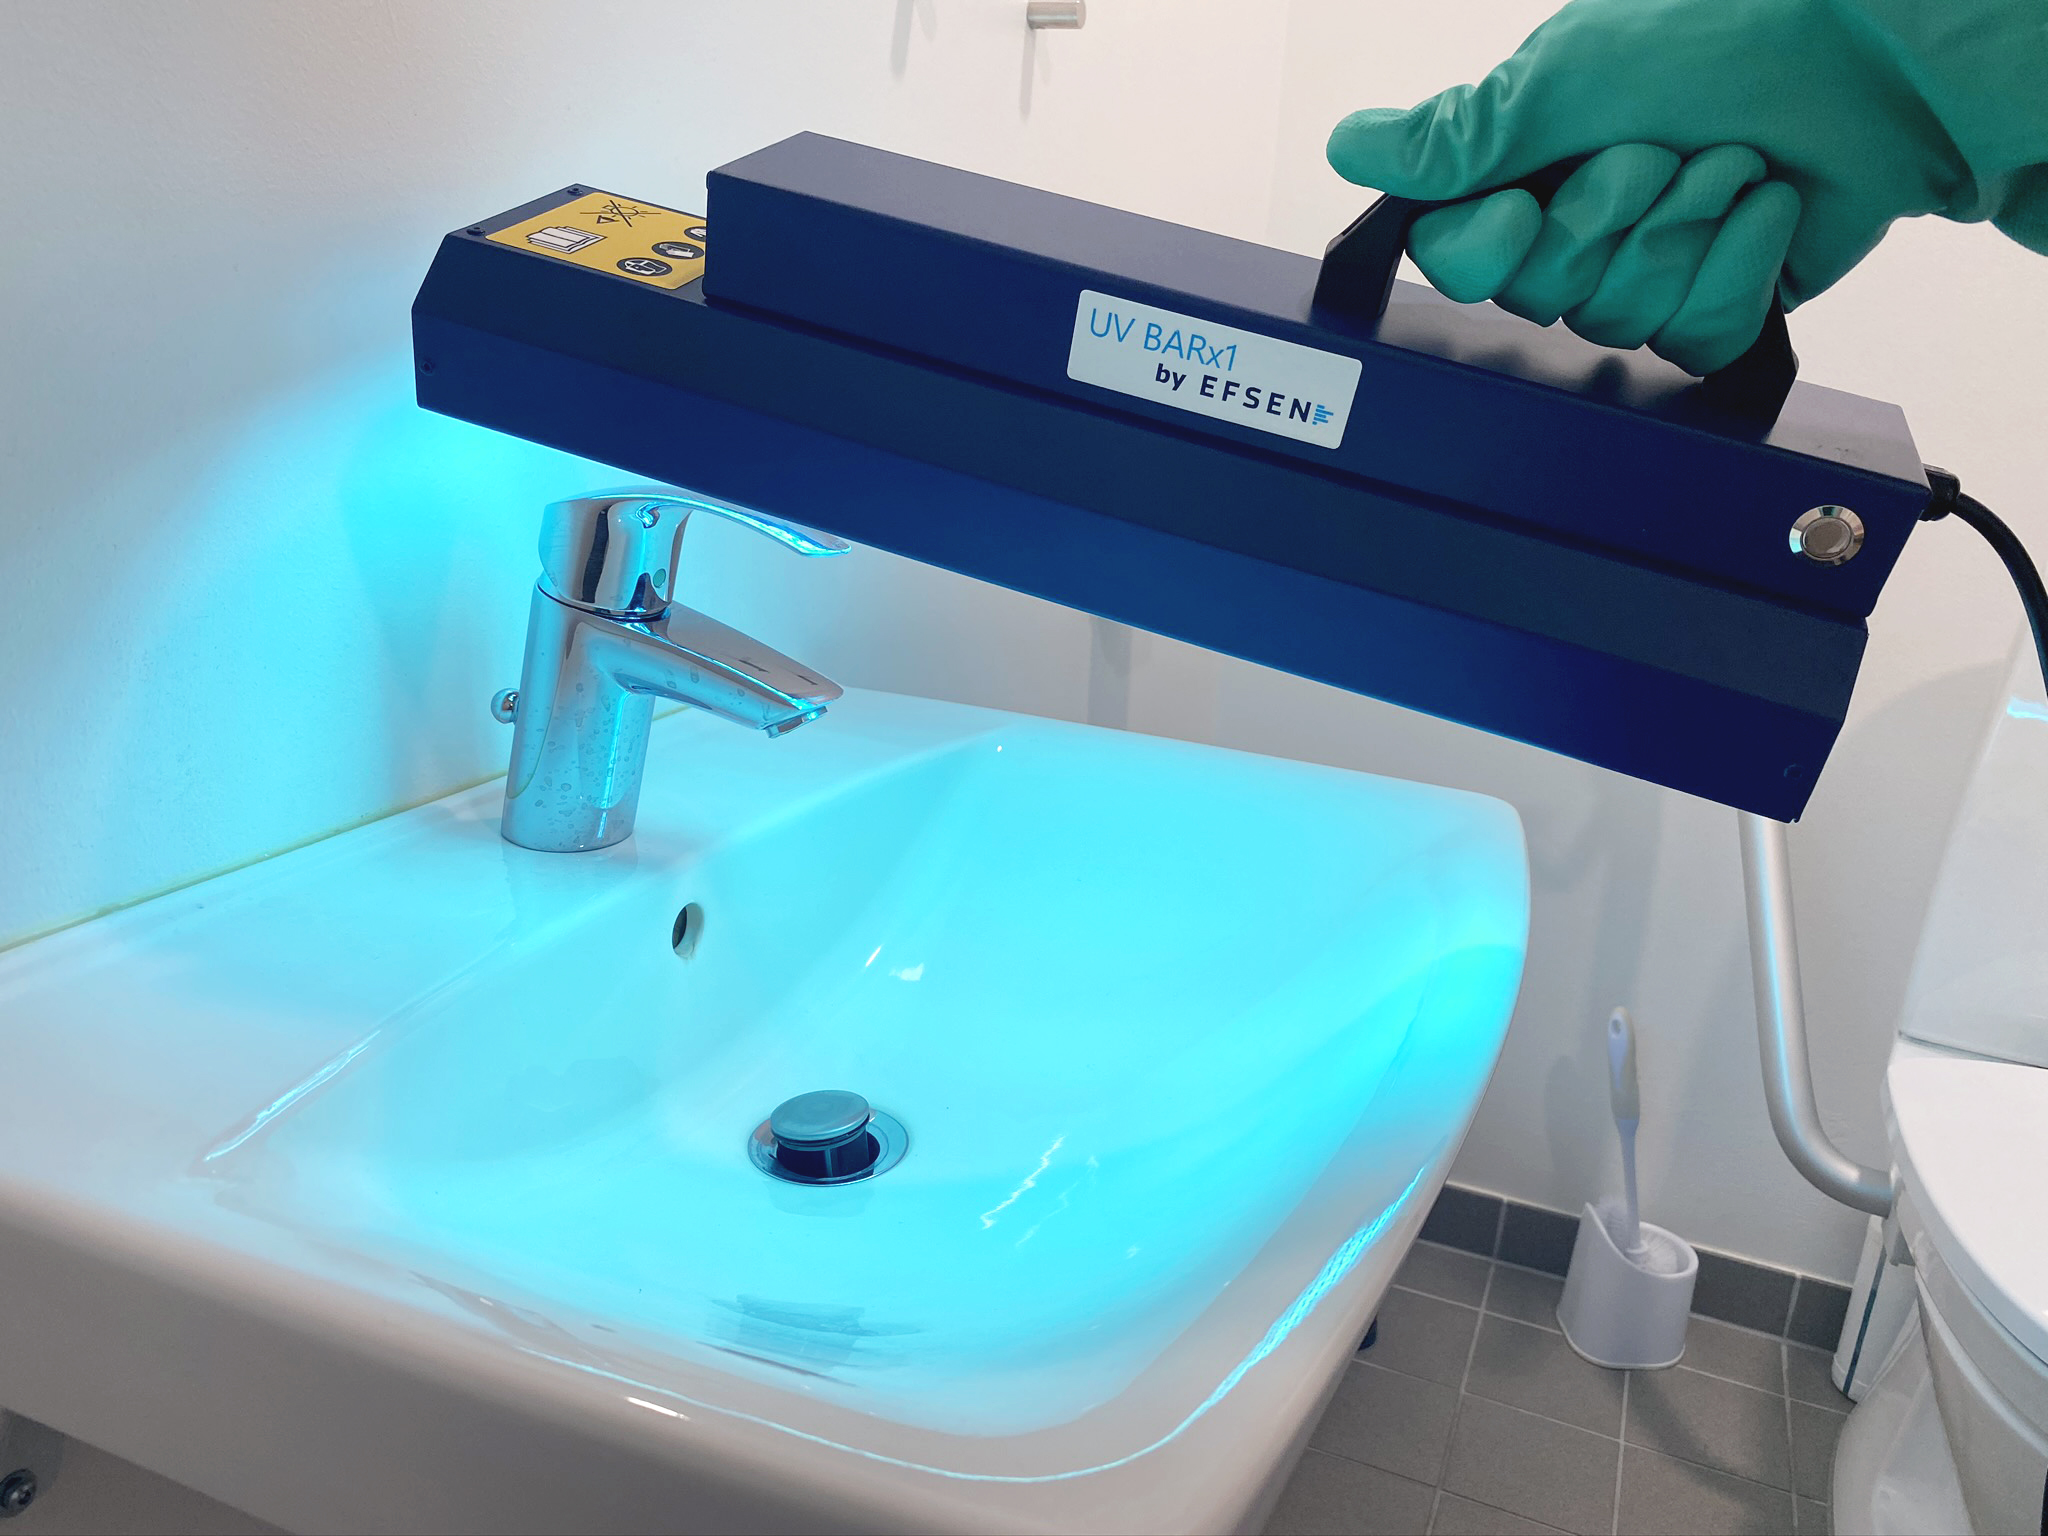 Håndholdt UV-lampe til desinfektion af overflader - smittespredning af og bakterier